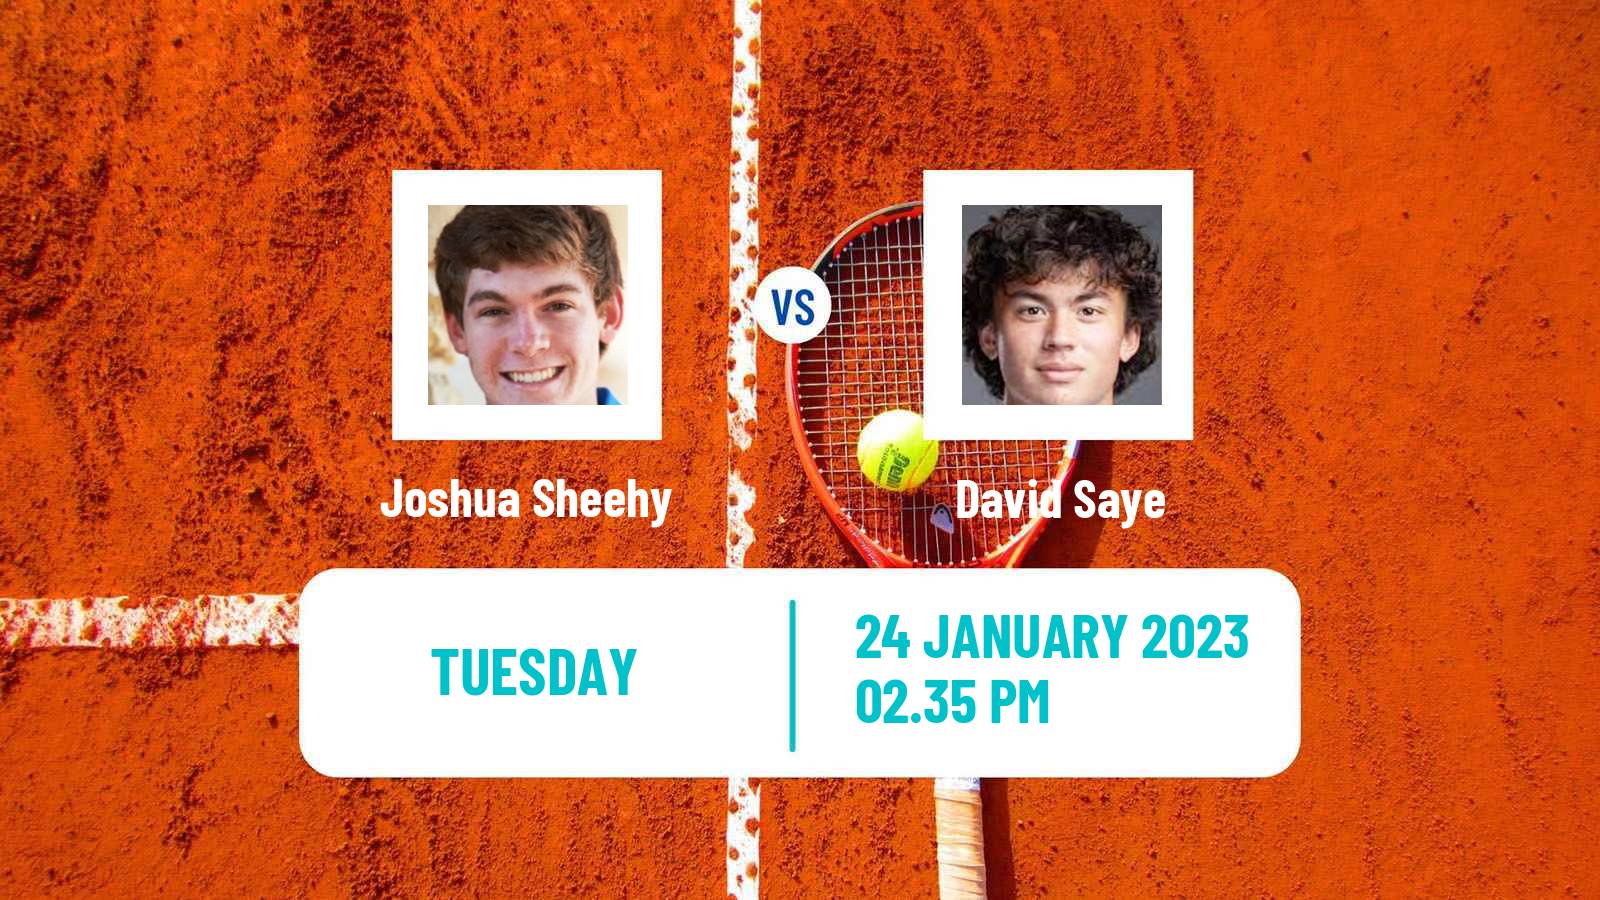 Tennis ITF Tournaments Joshua Sheehy - David Saye